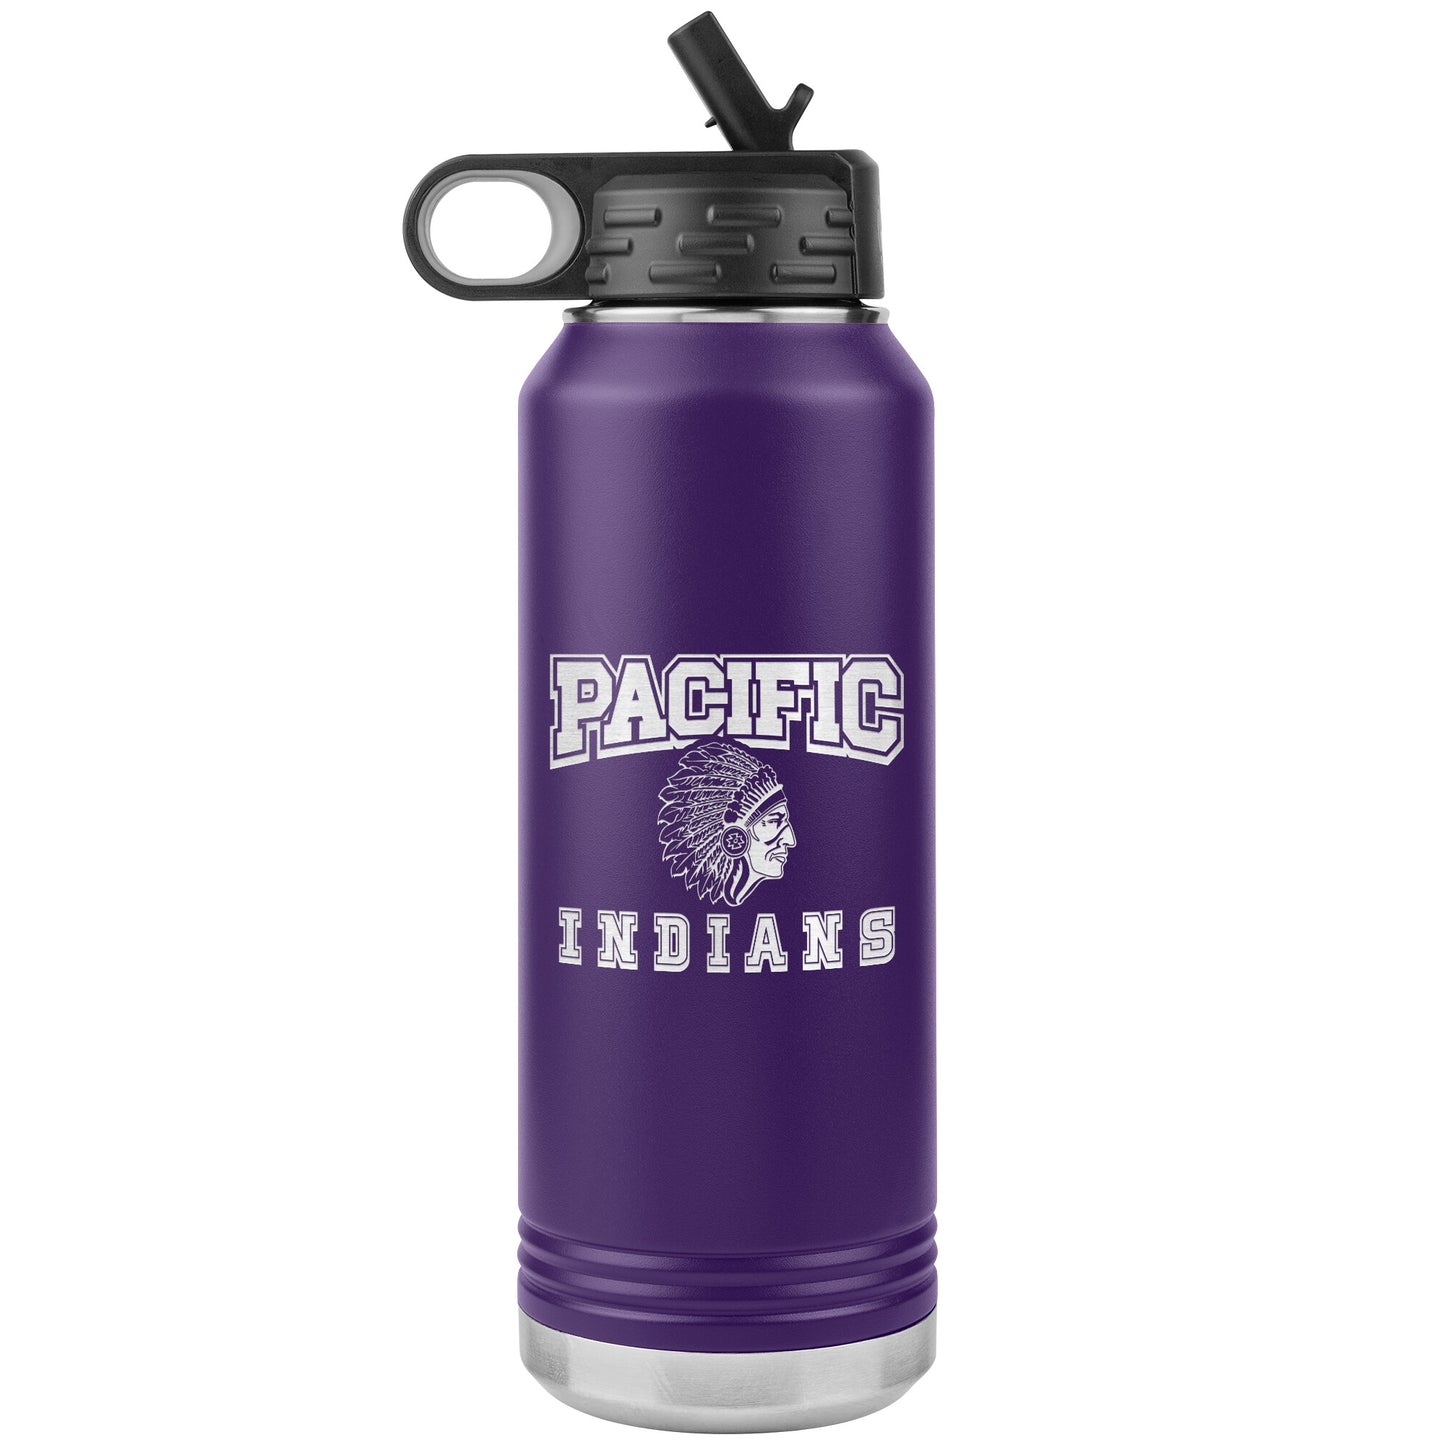 Pacific Indians Design 5 - 32oz Water Bottle Tumbler